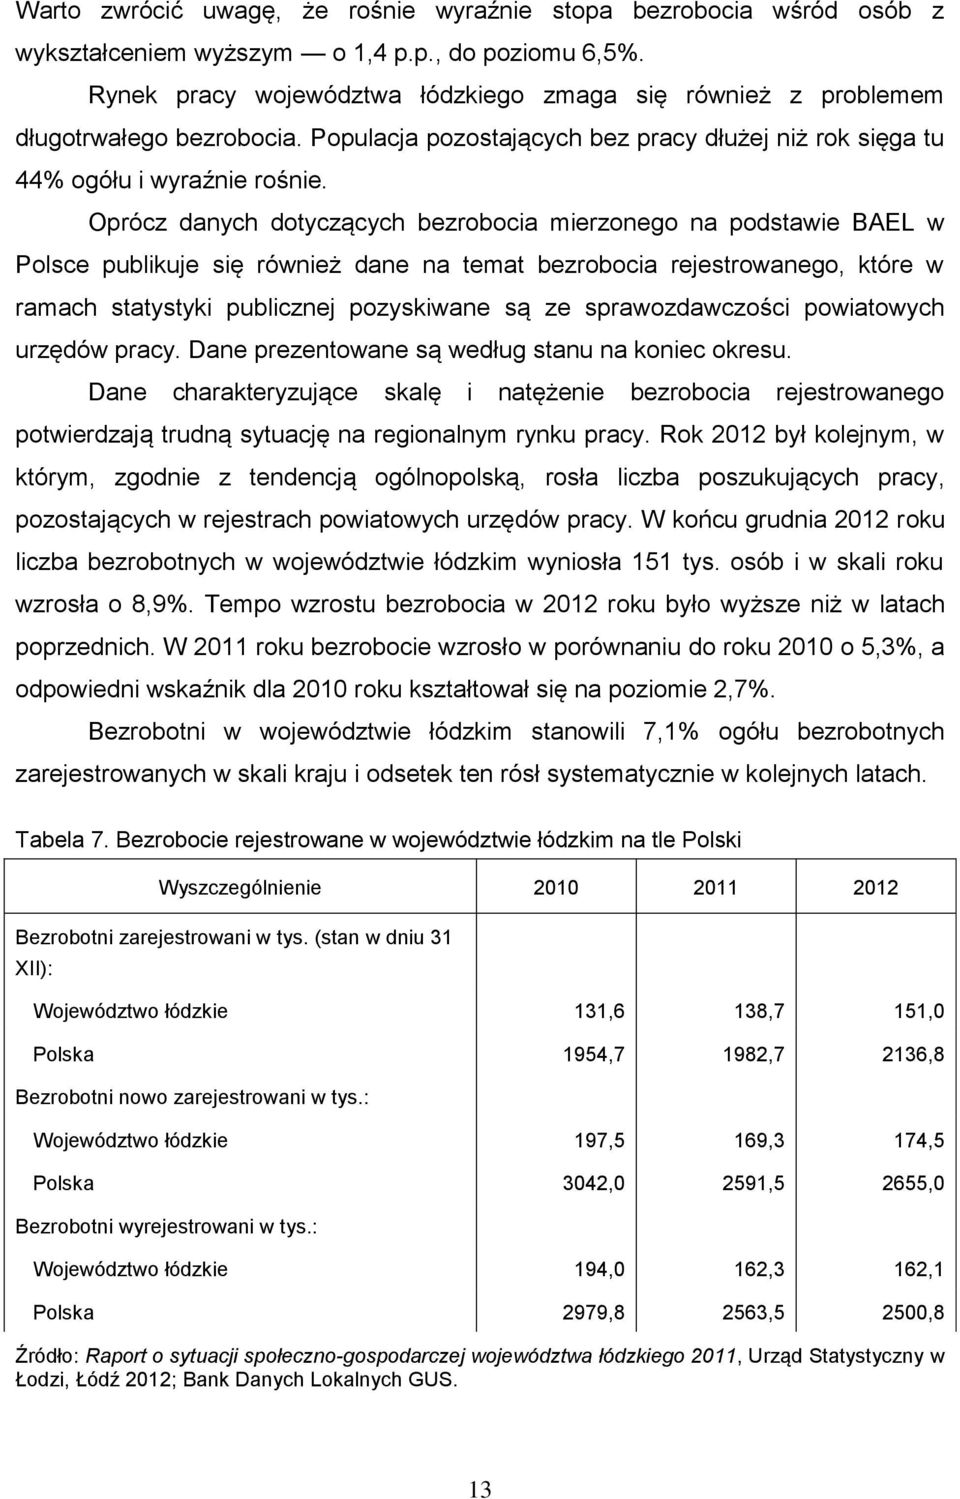 Oprócz danych dotyczących bezrobocia mierzonego na podstawie BAEL w Polsce publikuje się również dane na temat bezrobocia rejestrowanego, które w ramach statystyki publicznej pozyskiwane są ze